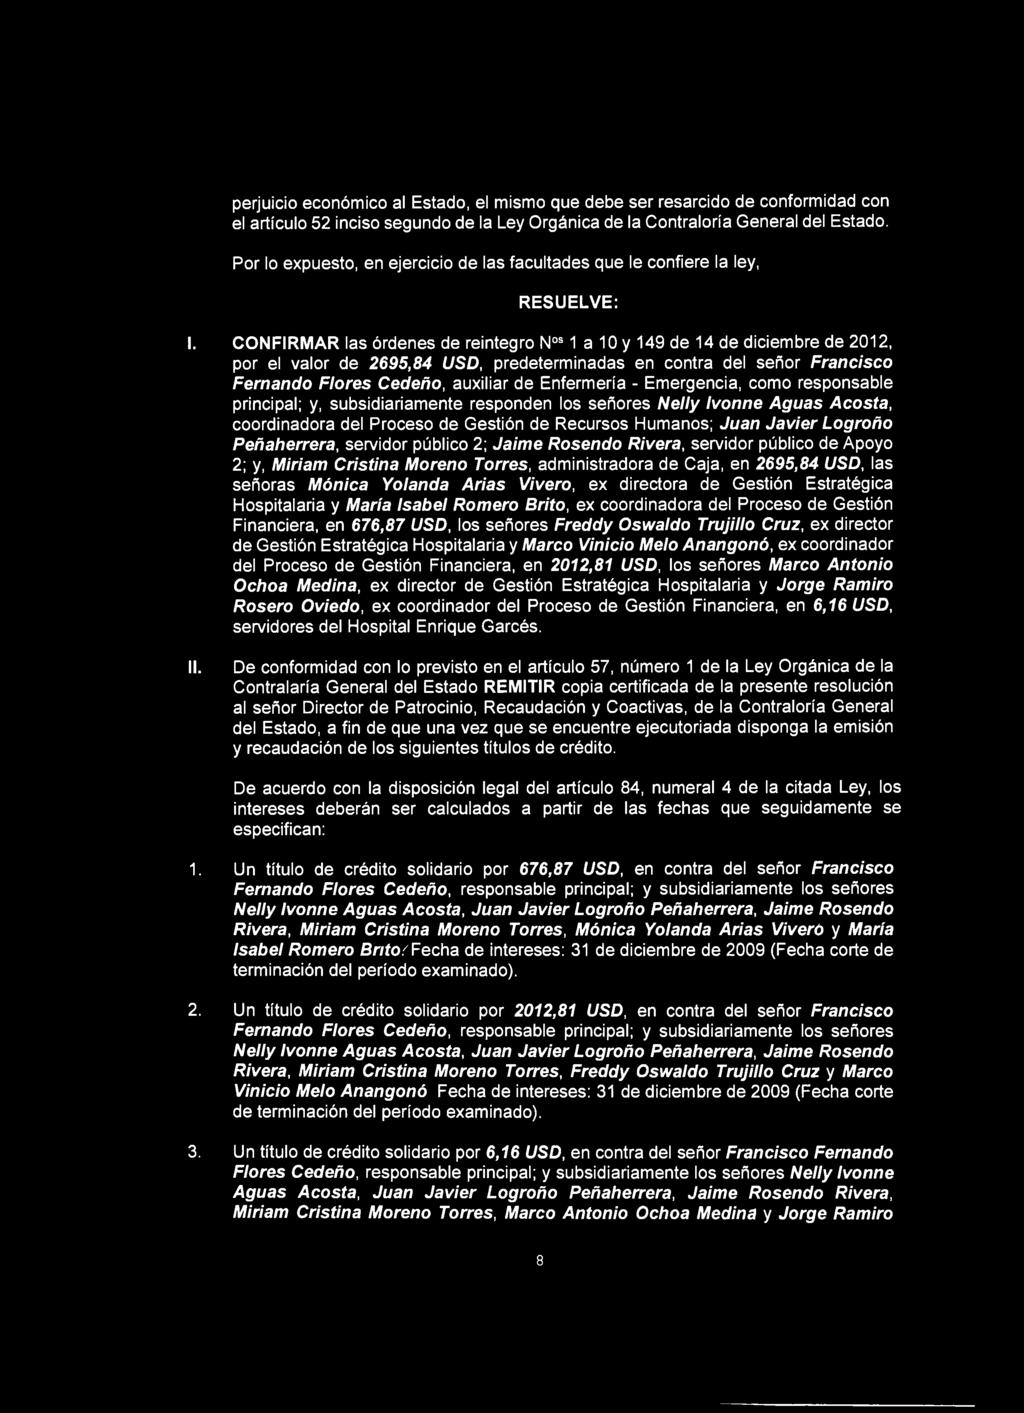 CONFIRMAR las órdenes de reintegro Nos 1 a 10 y 149 de 14 de diciembre de 2012, por el valor de 2695,84 USD, predeterminadas en contra del señor Francisco Femando Flores Cedeño, auxiliar de